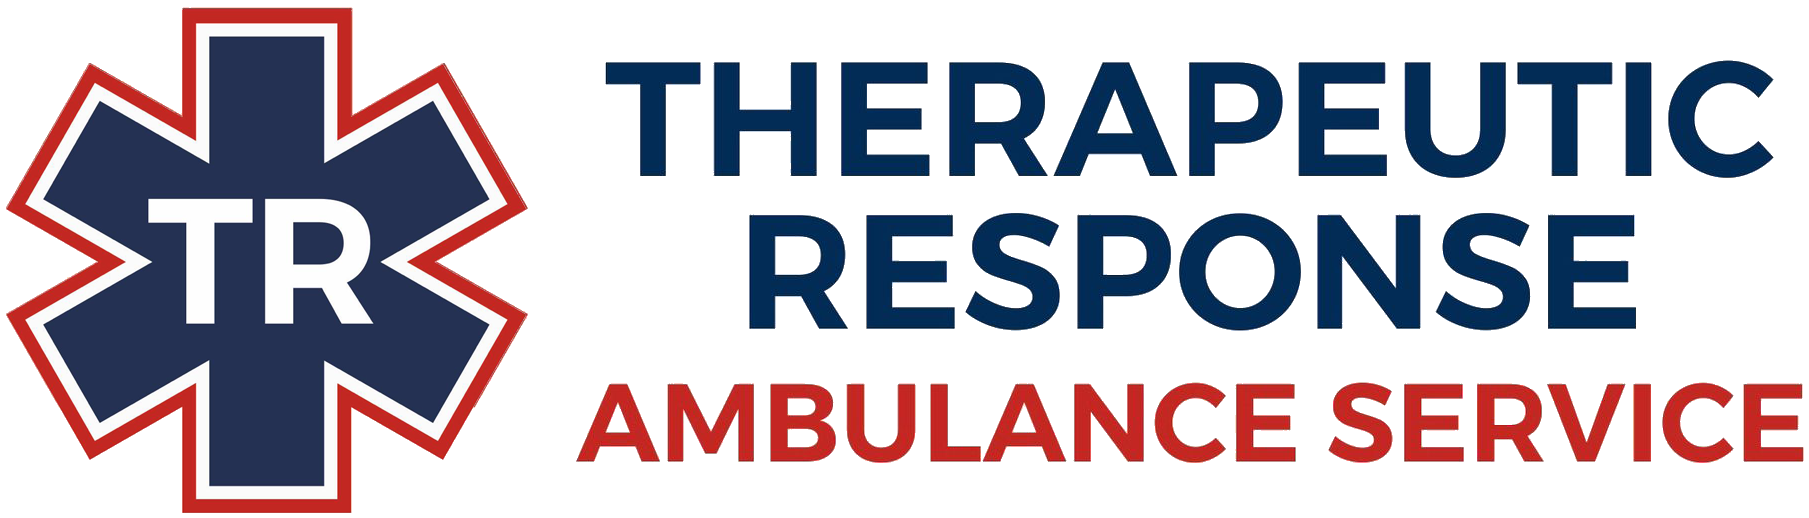 Therapeutic Response Ambulance Service logo